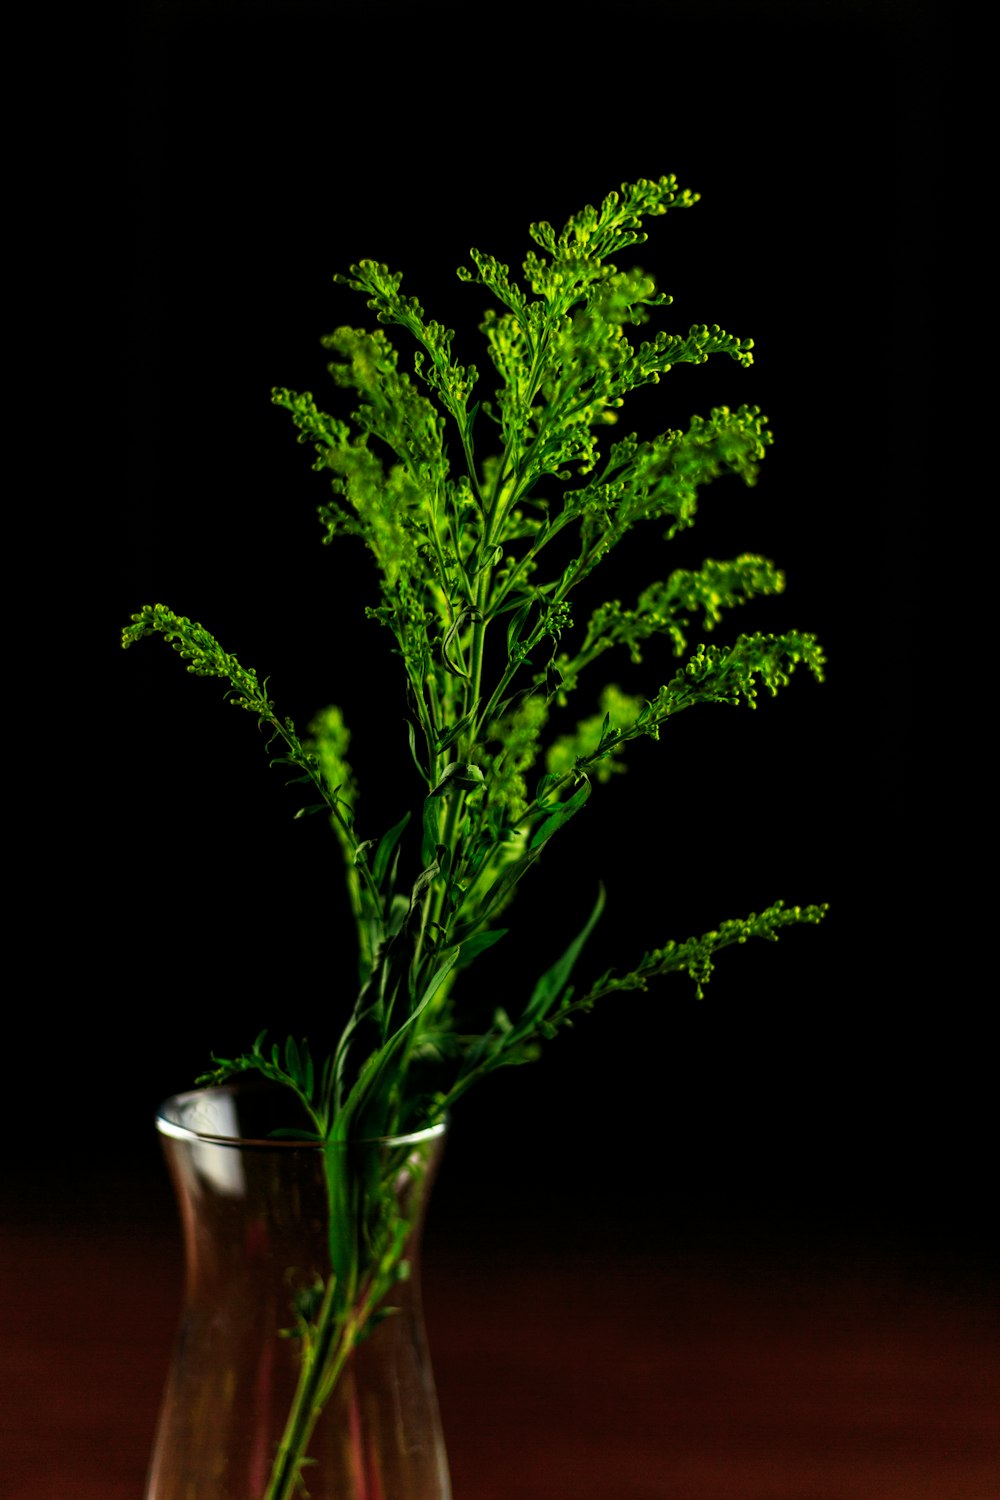 투명한 유리 꽃병에 녹색 잎이 달린 식물